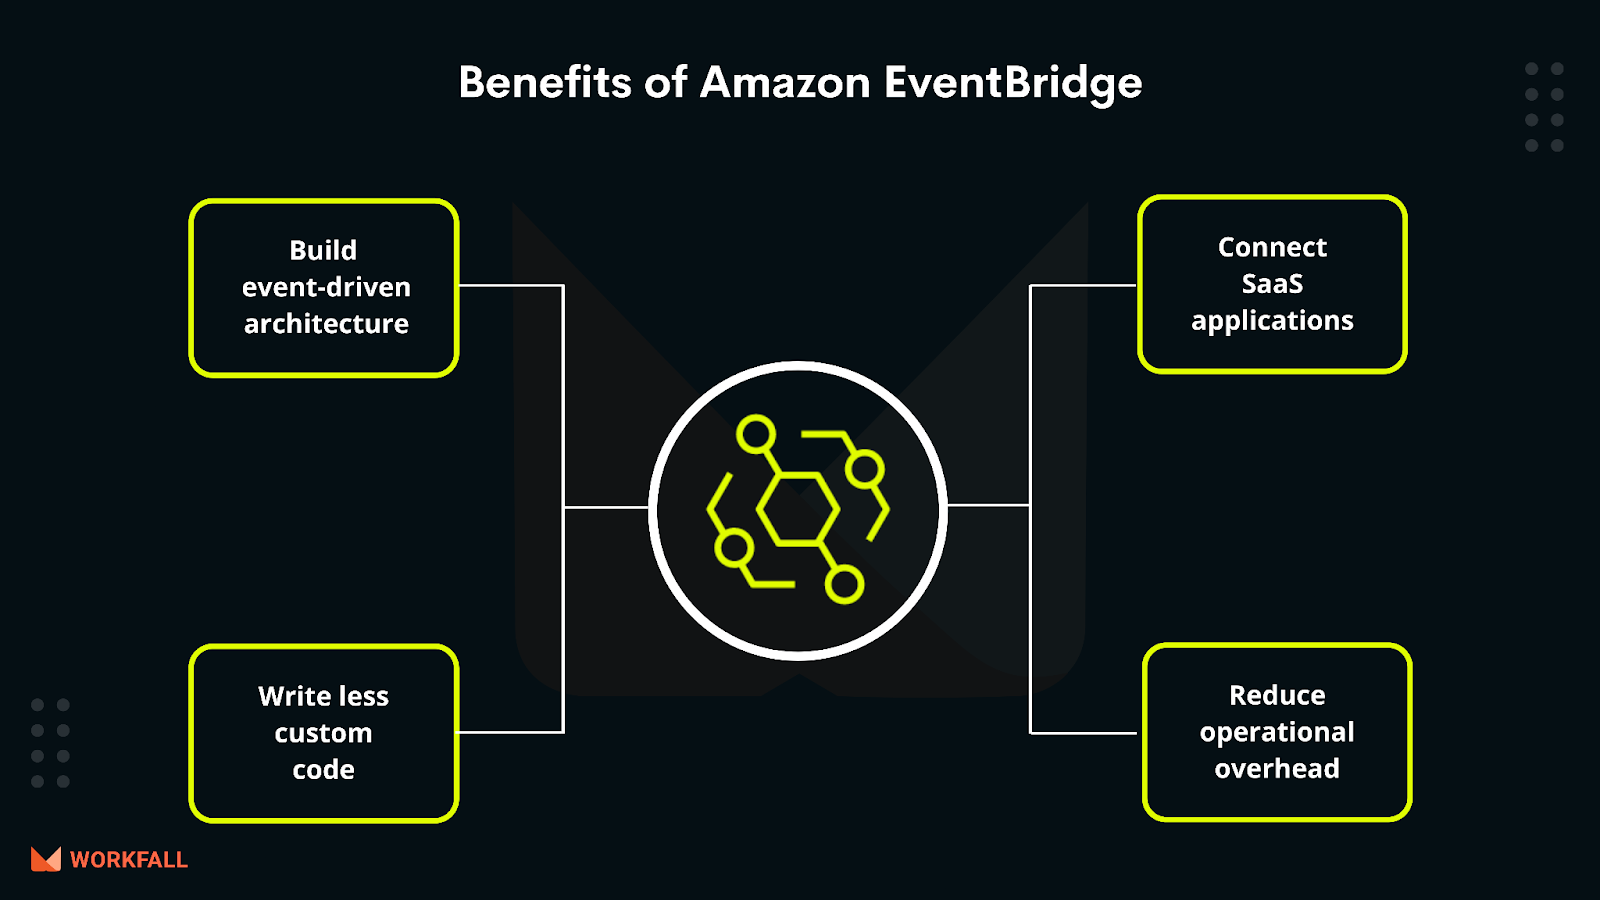 Benefits of Amazon EventBridge